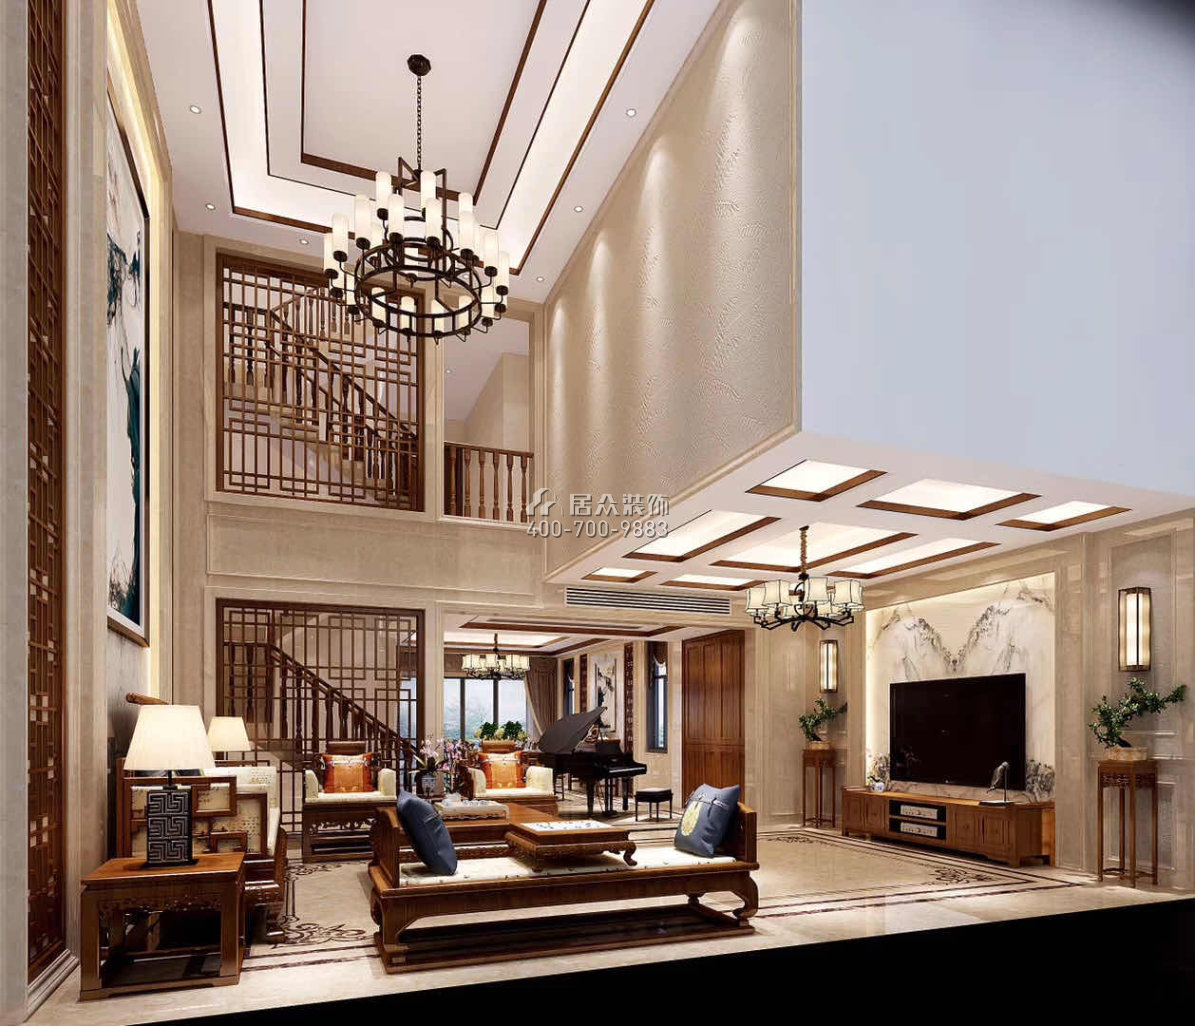 华桂园330平方米中式风格别墅户型客厅装修效果图